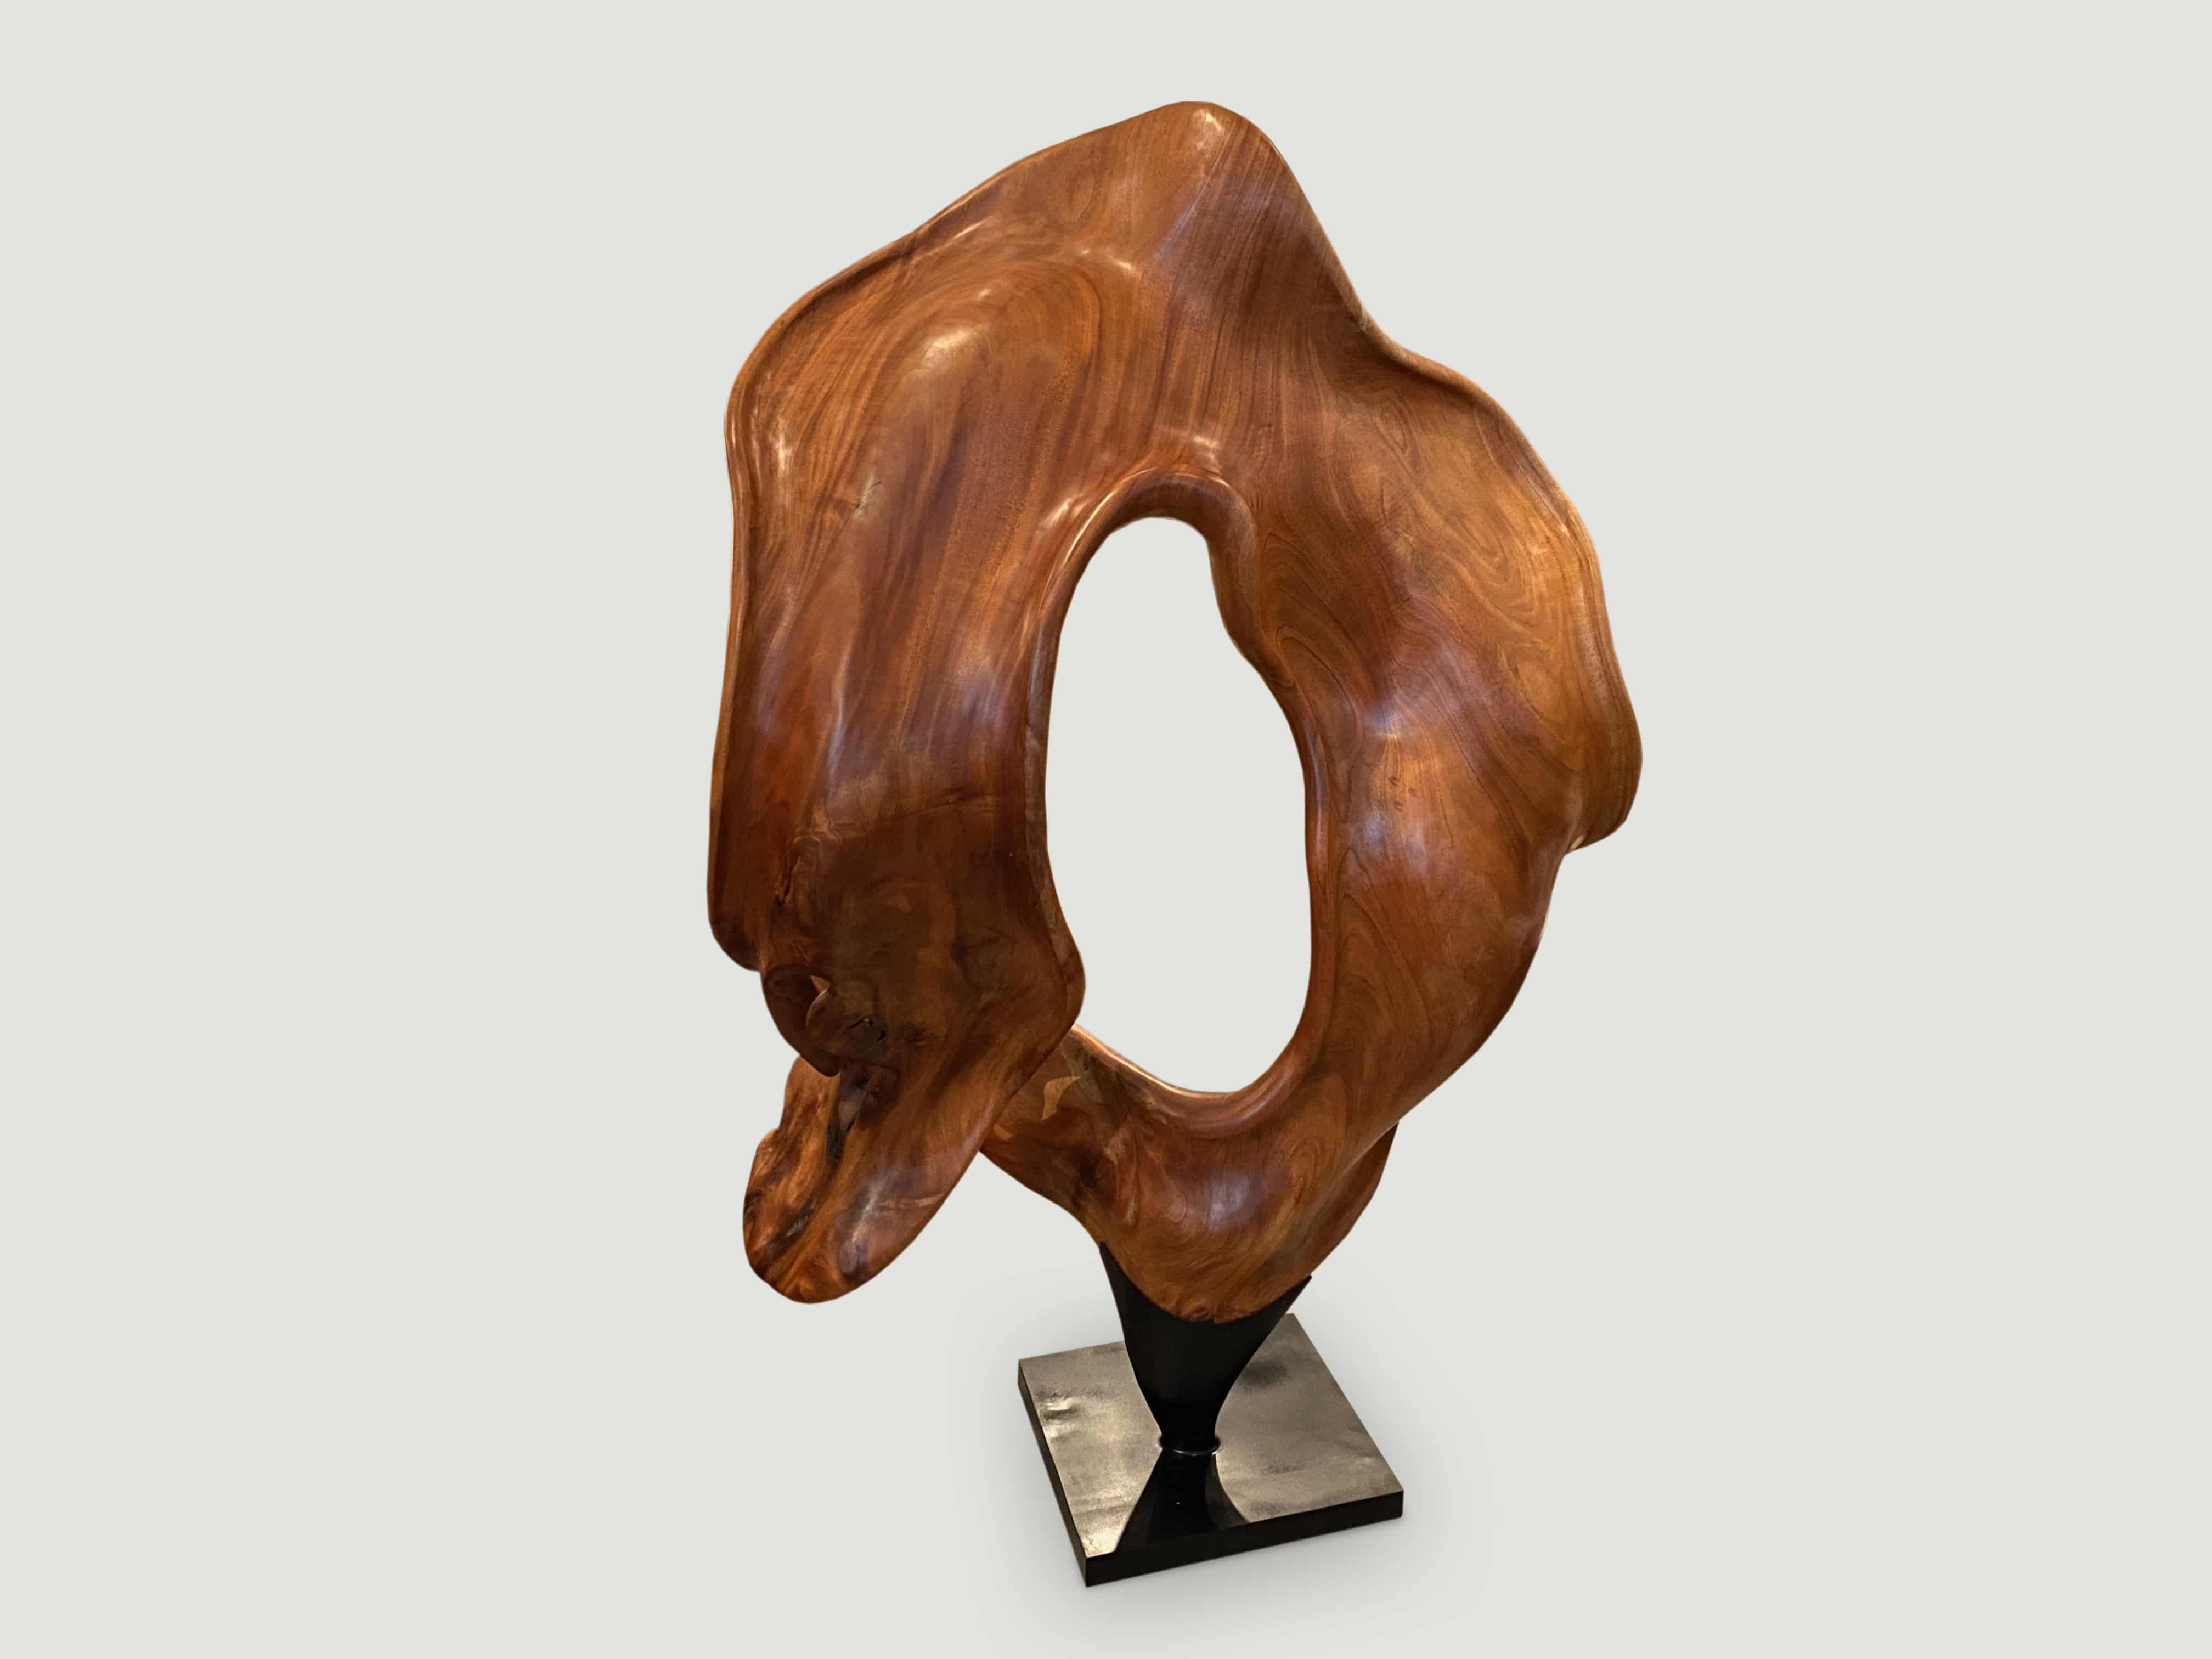 mahogany wood sculpture